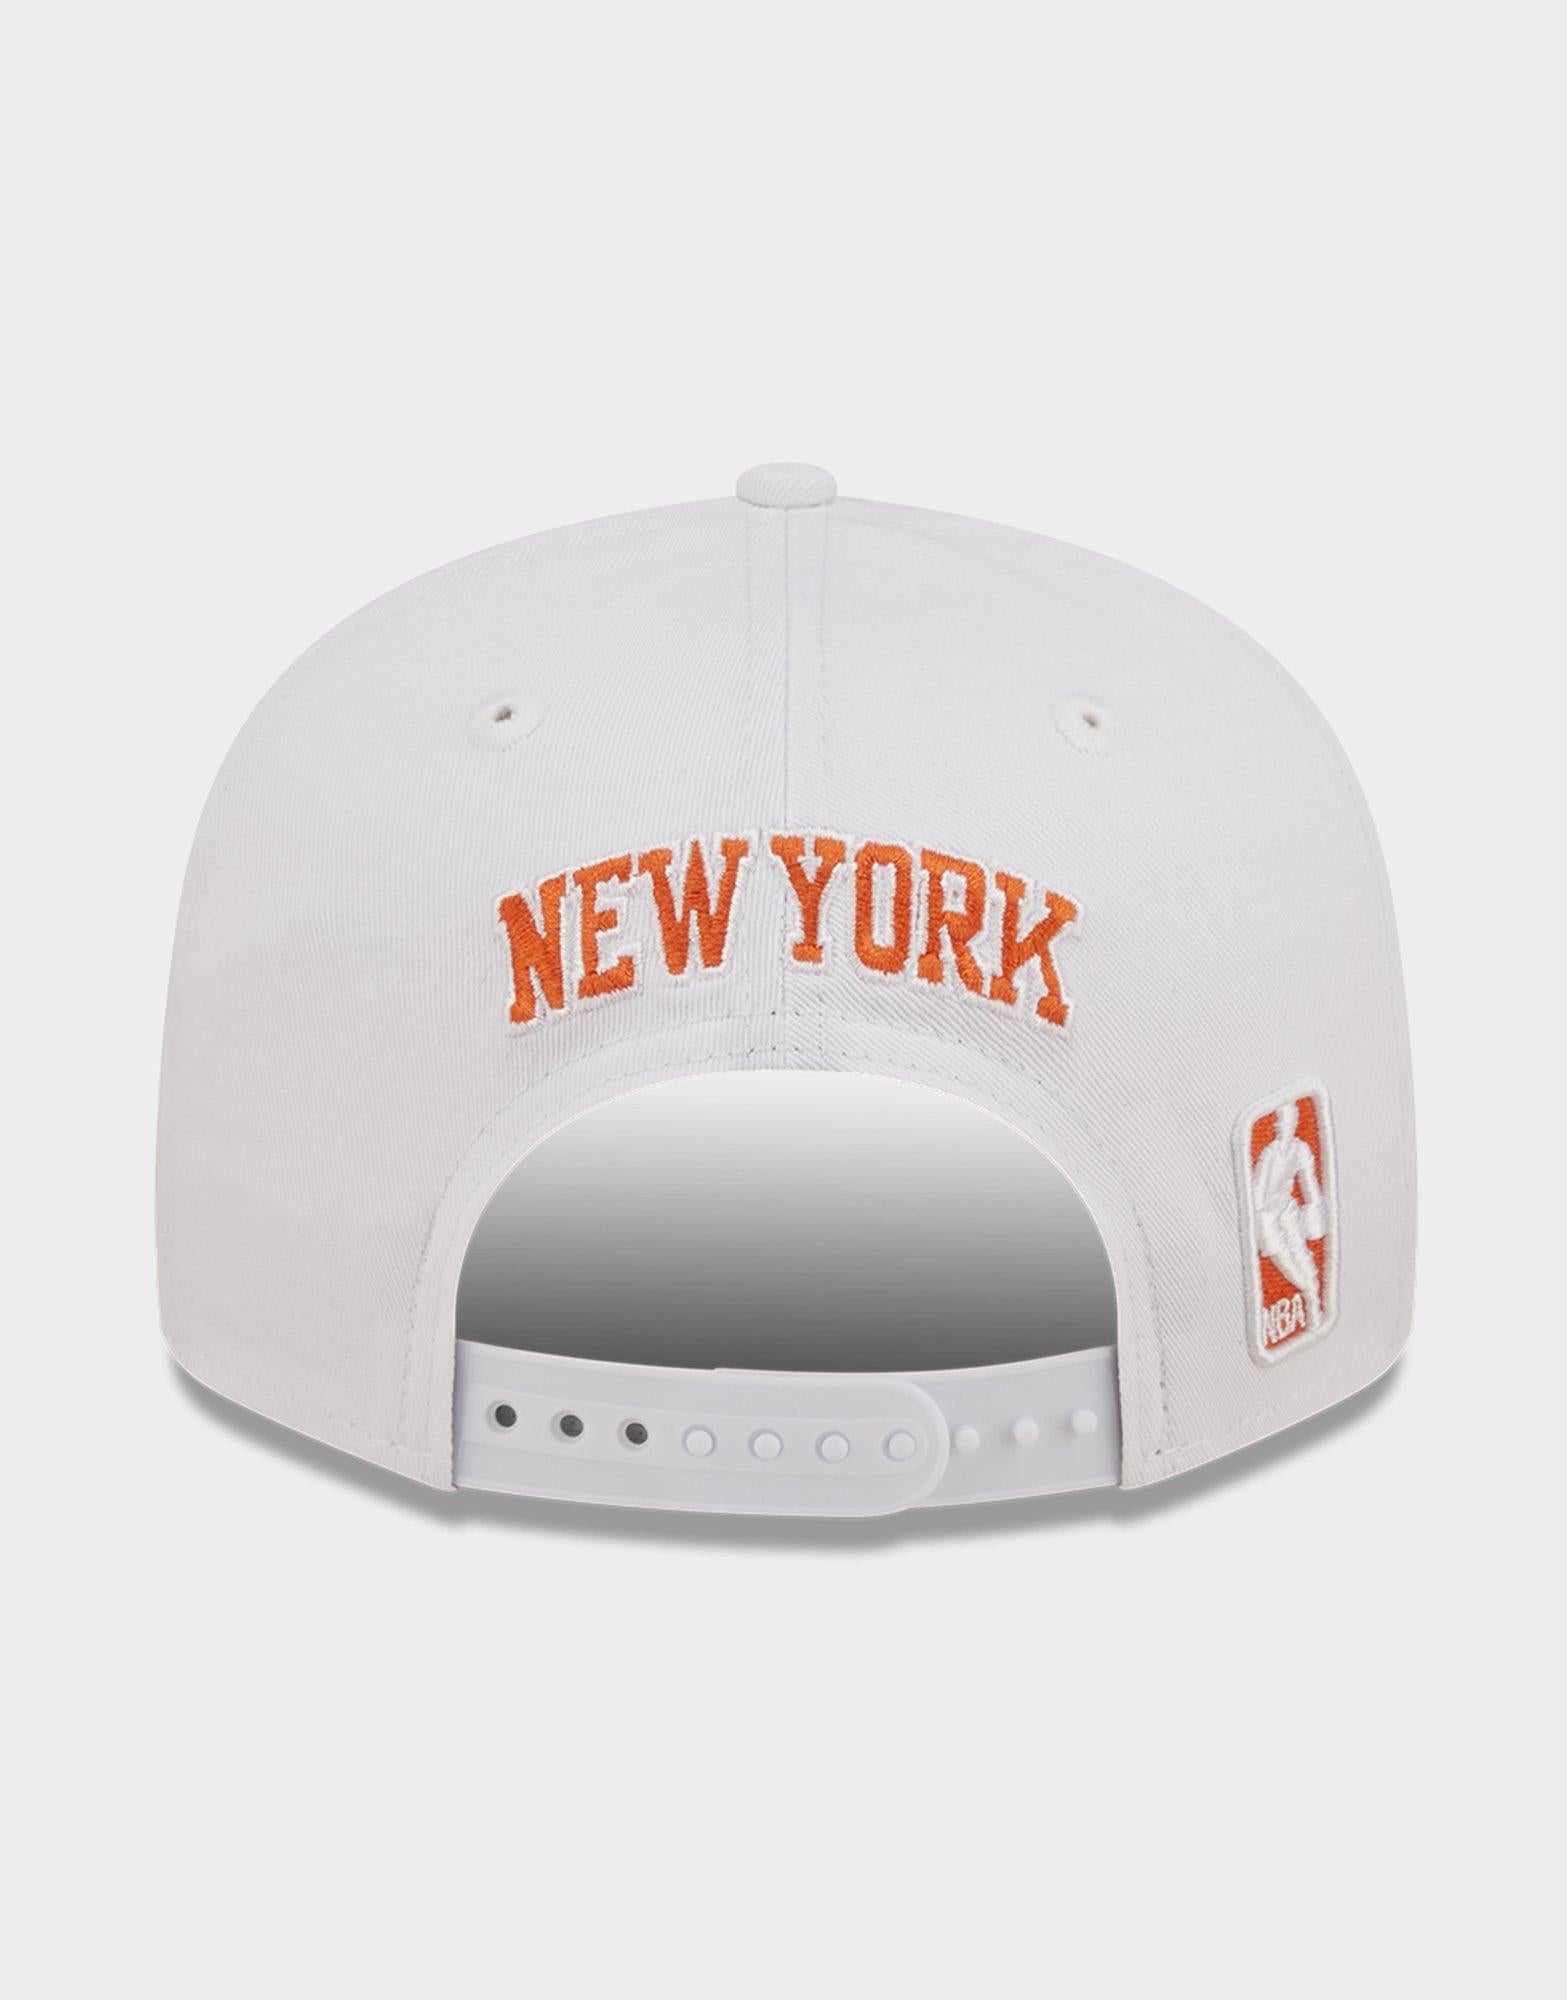 כובע מצחייה 9Fifty Knicks